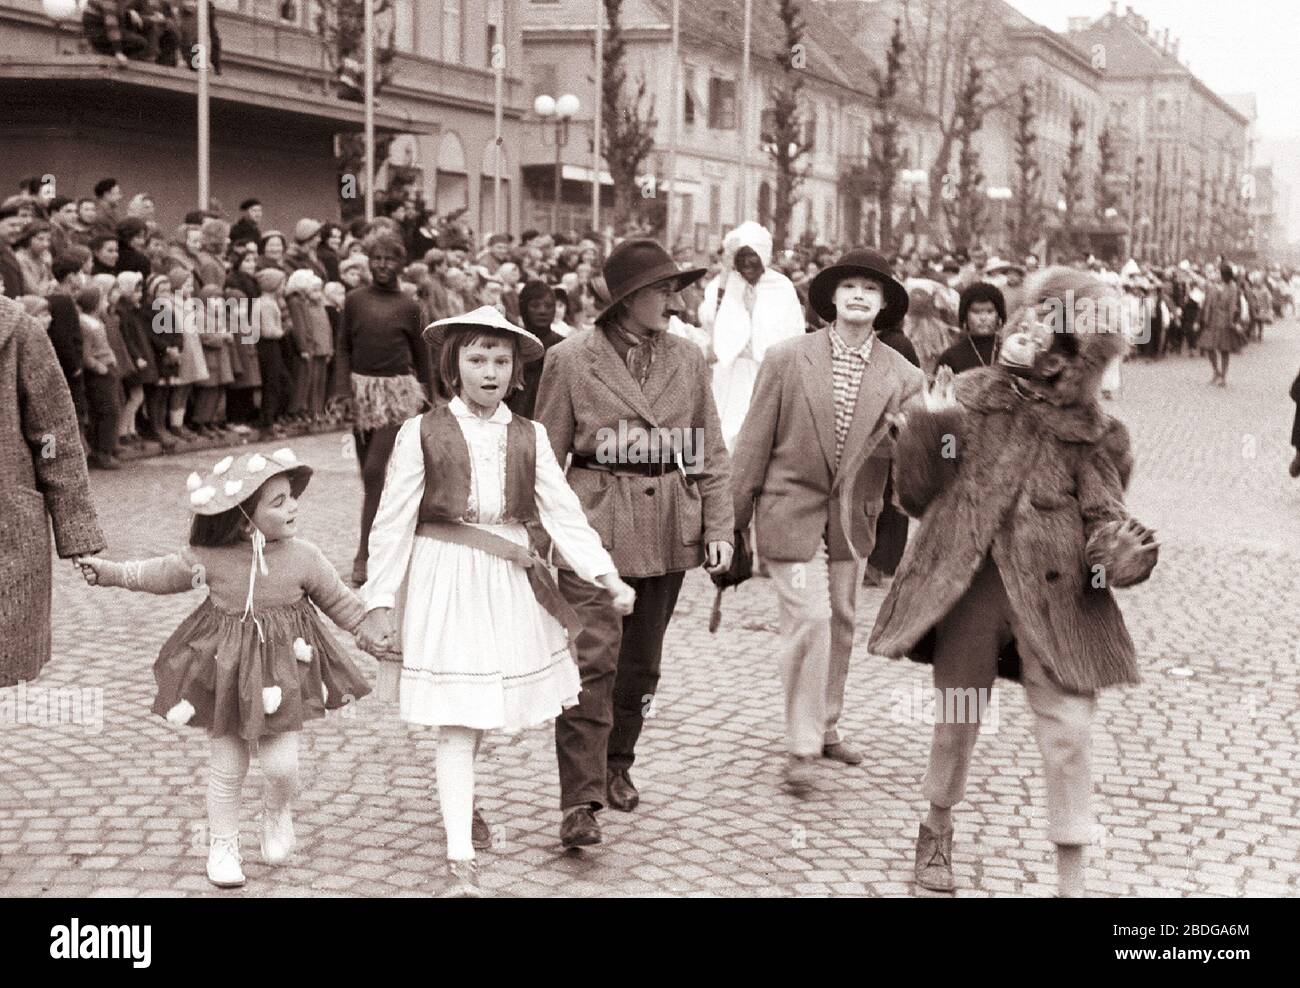 14. février 1961, Maribor: Tudi v Mariboru je bil današnji pustni dan v  znamenju karnevalskega obhoda mask po mariborskih ulicah. Zlasti številne  maske so bili otoci šol in vrtcev. Otroški pustni sprevod